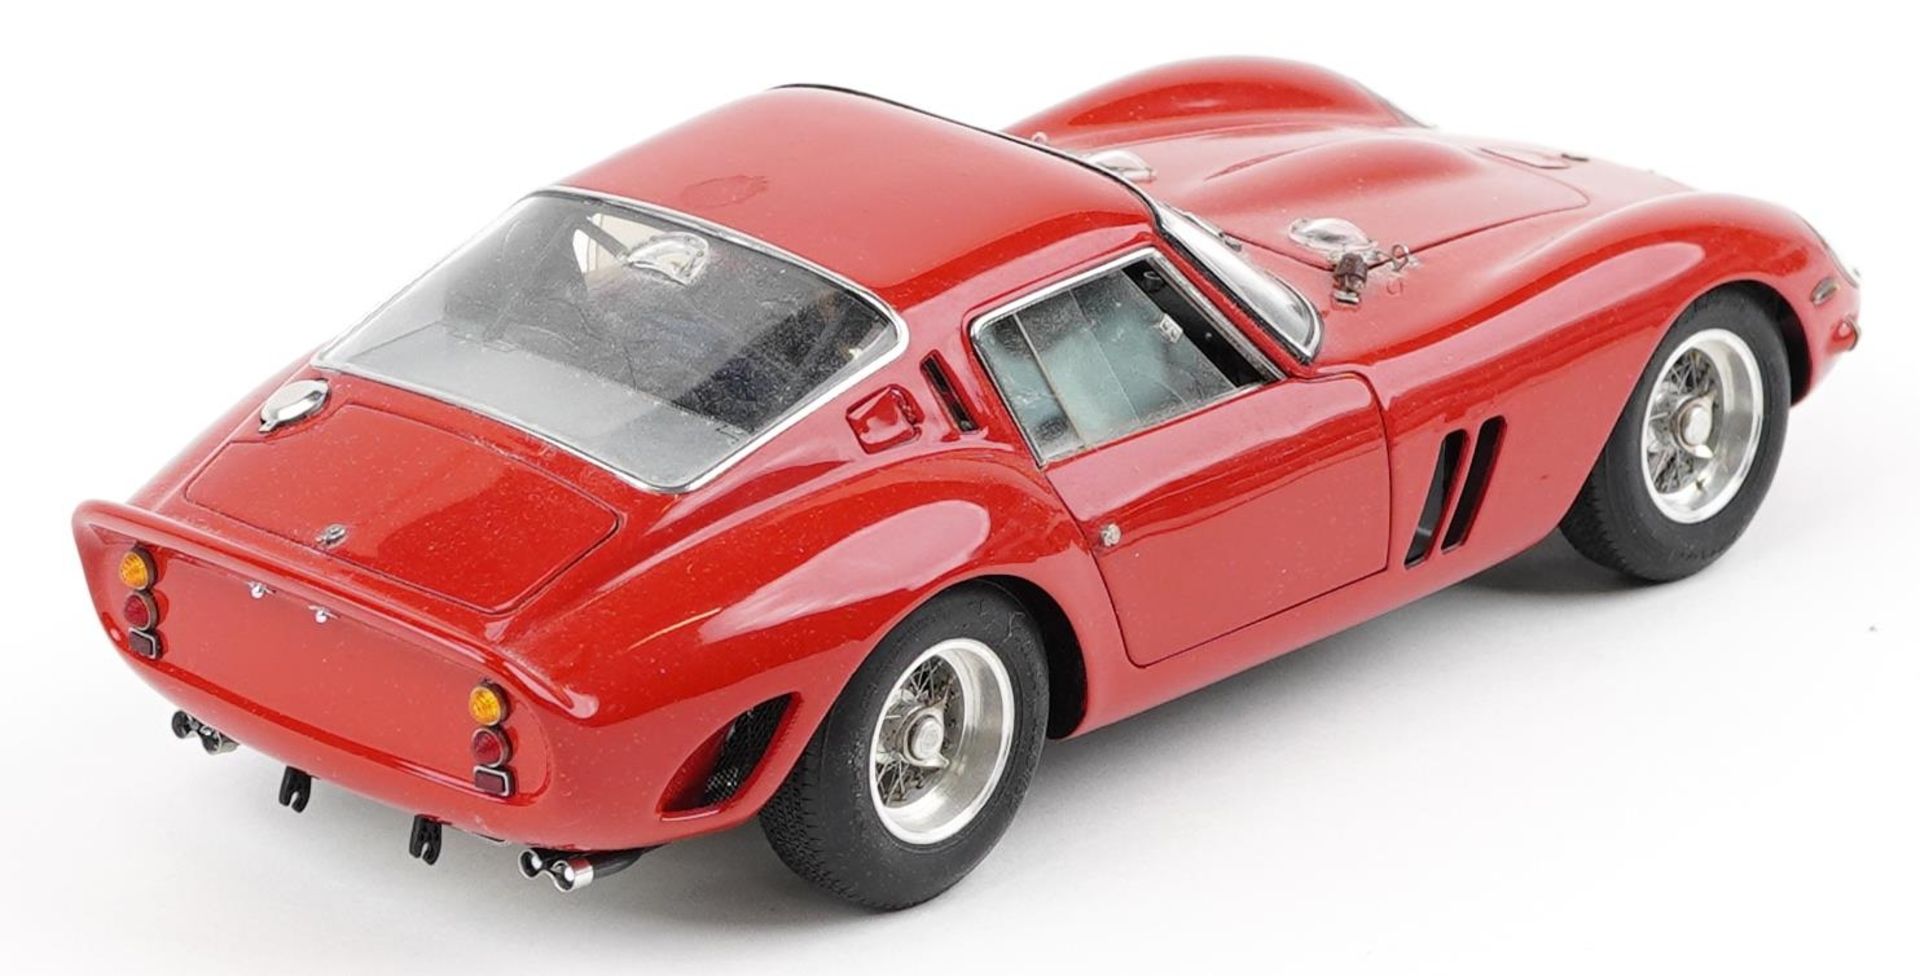 CMC 1:18 scale diecast model Ferrari 250 GTO in red with box and slip cover - Bild 3 aus 5